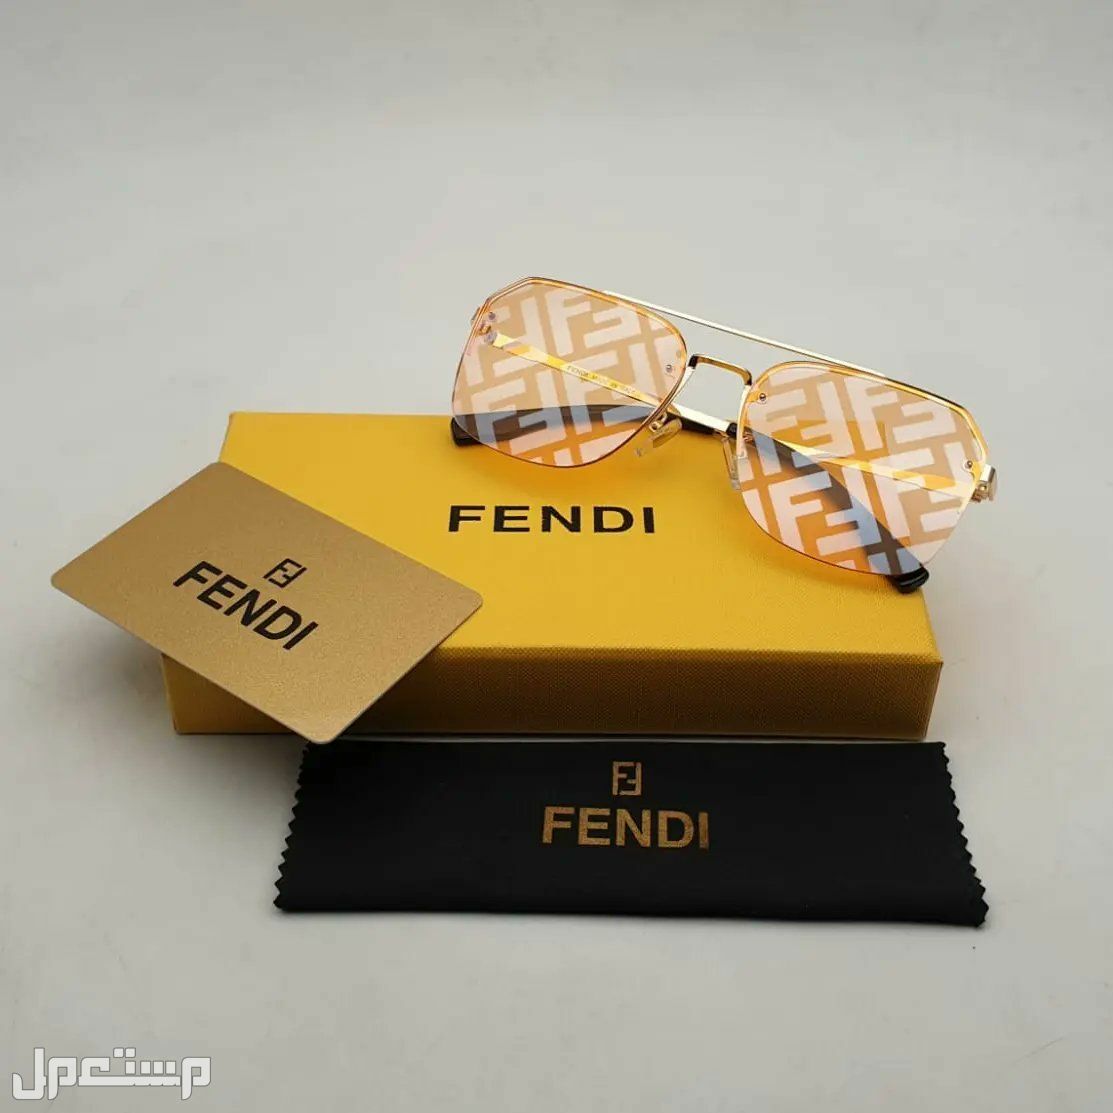 نظارات فندي Fendi النسائية تعرف على مواصفاتها وأسعارها كاملة في ليبيا فندي مميزة